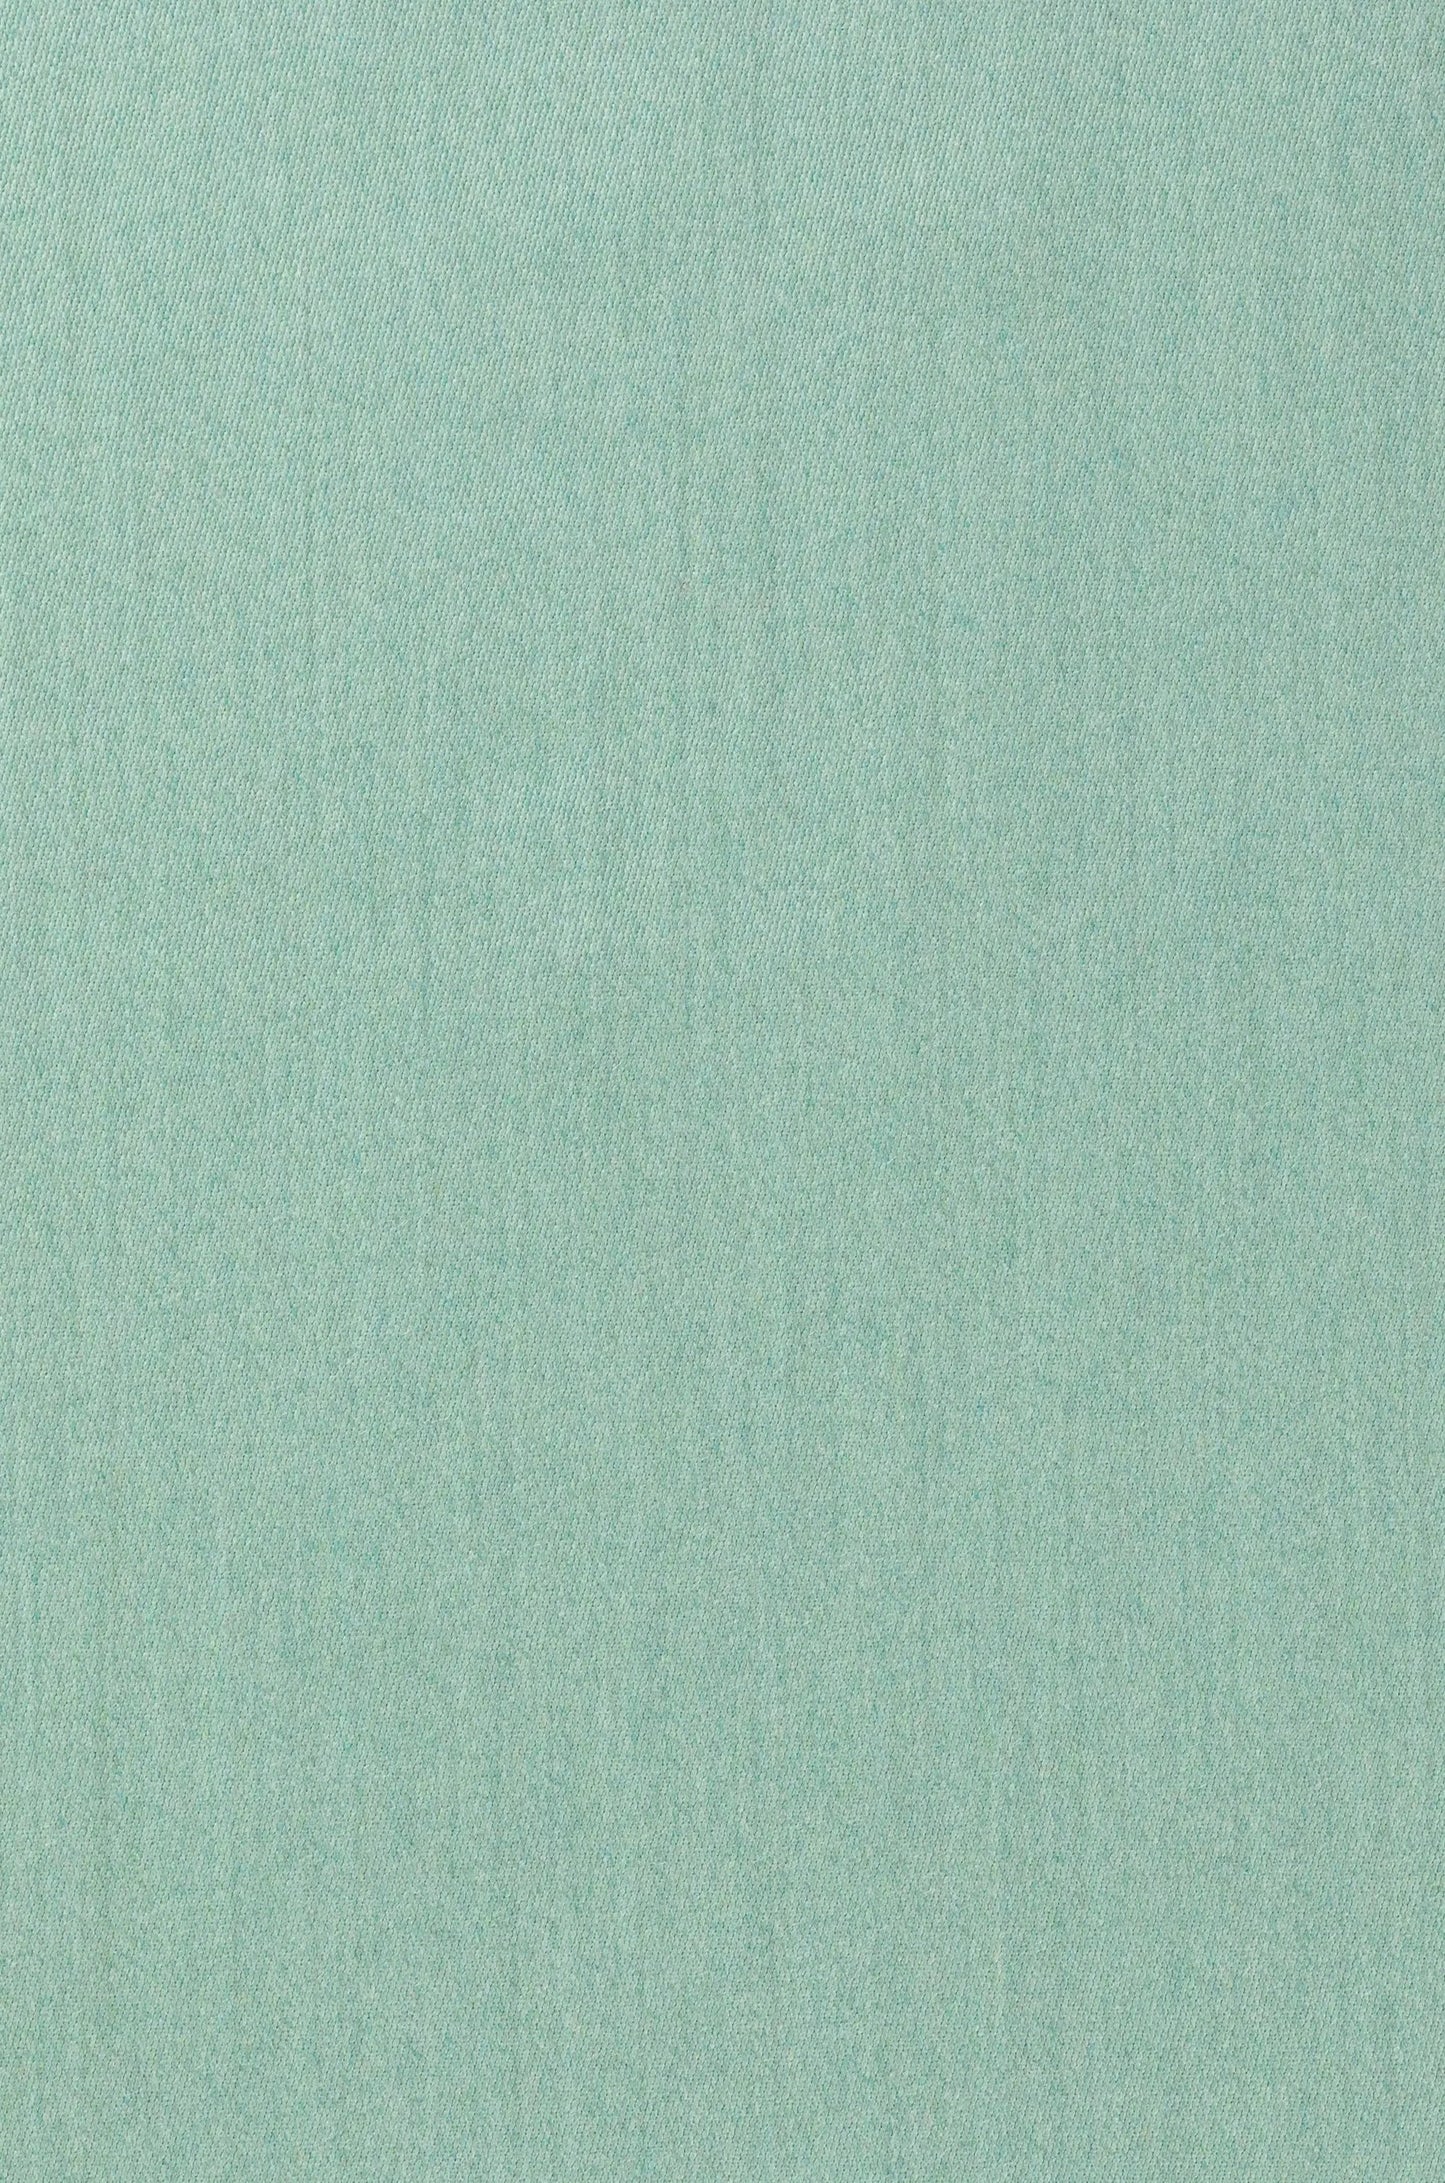 Tivoli Mélange Sateen Merino Wool Fabric in Seaglass CD000526 UI321719